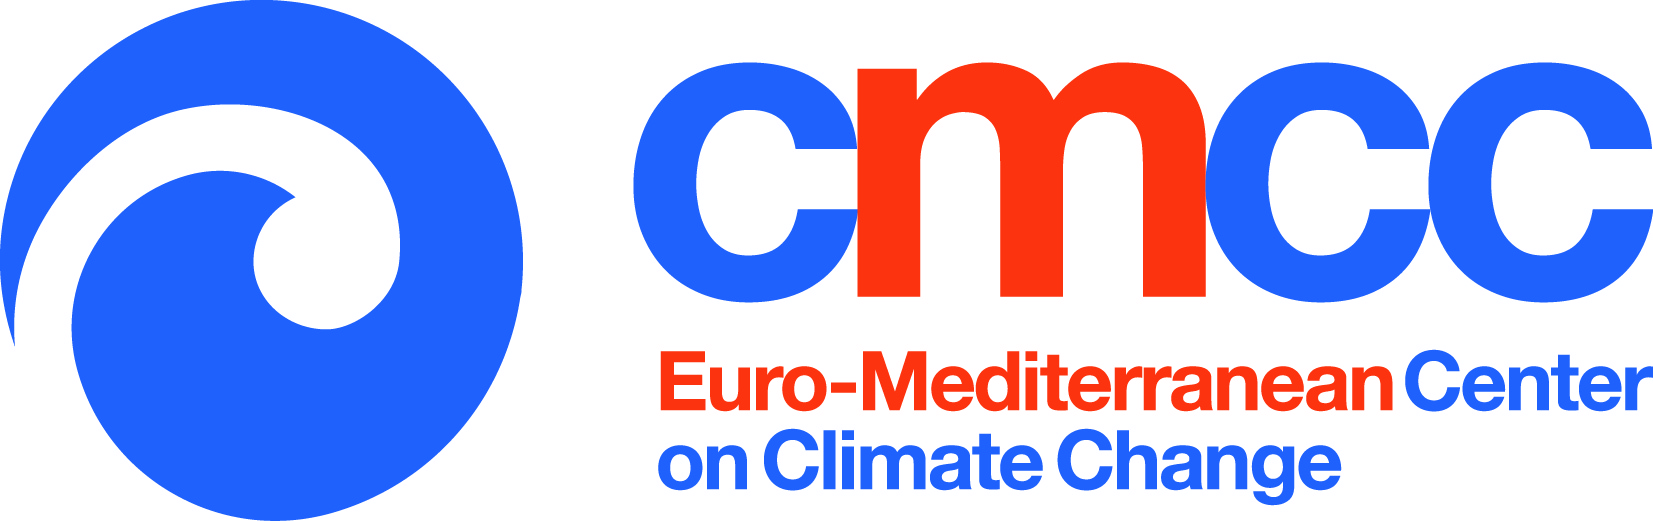 Logo CMCC@Ca’Foscari – Centro Euro-Mediterraneo sui Cambiamenti Climatici